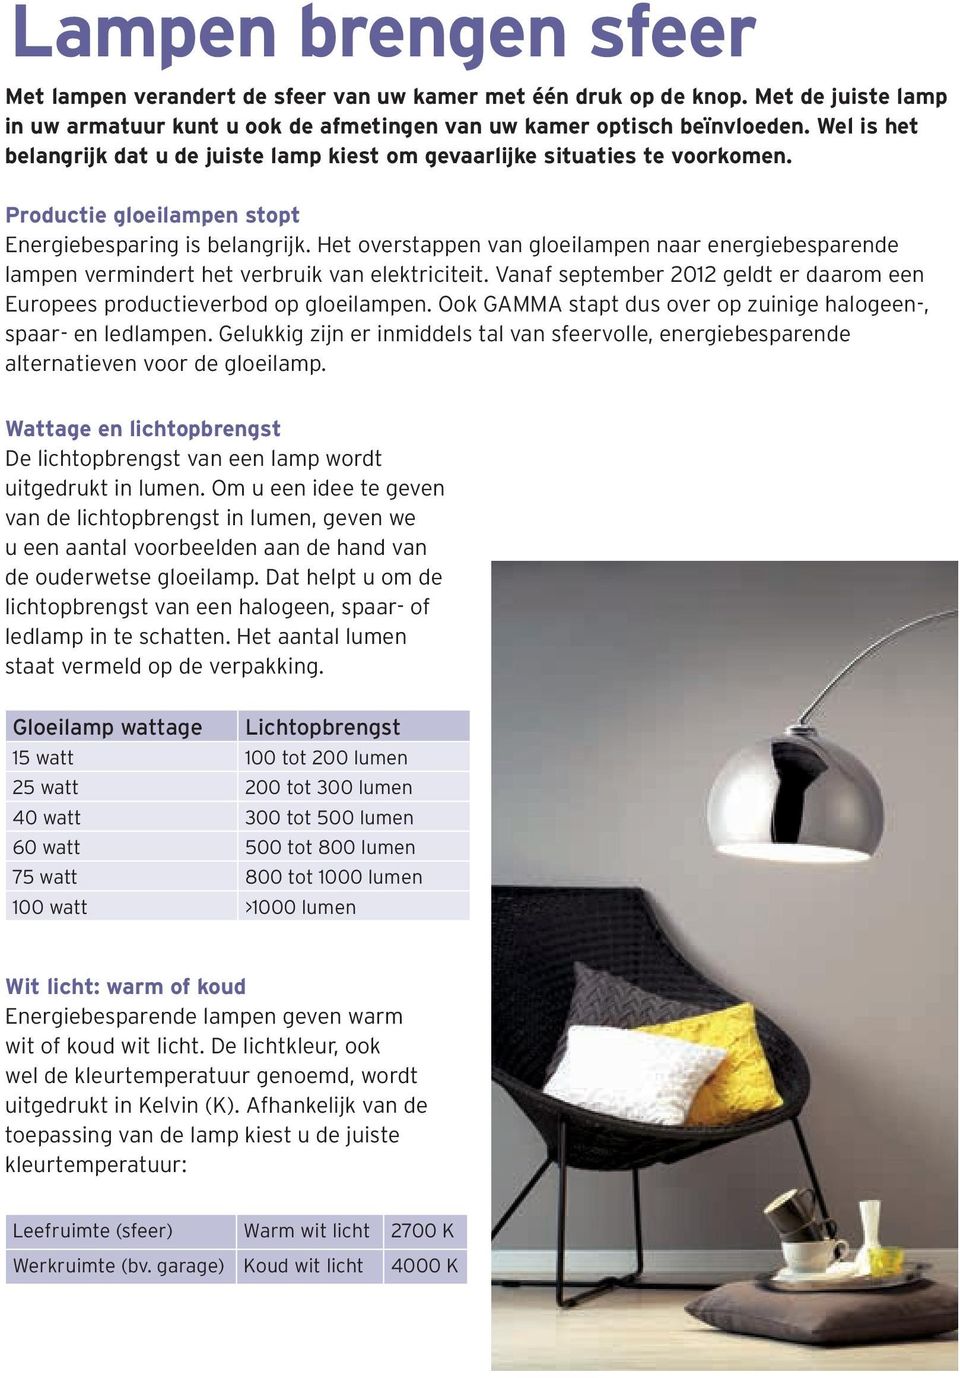 Het overstappen van gloeilampen naar energiebesparende lampen vermindert het verbruik van elektriciteit. Vanaf september 2012 geldt er daarom een Europees productieverbod op gloeilampen.